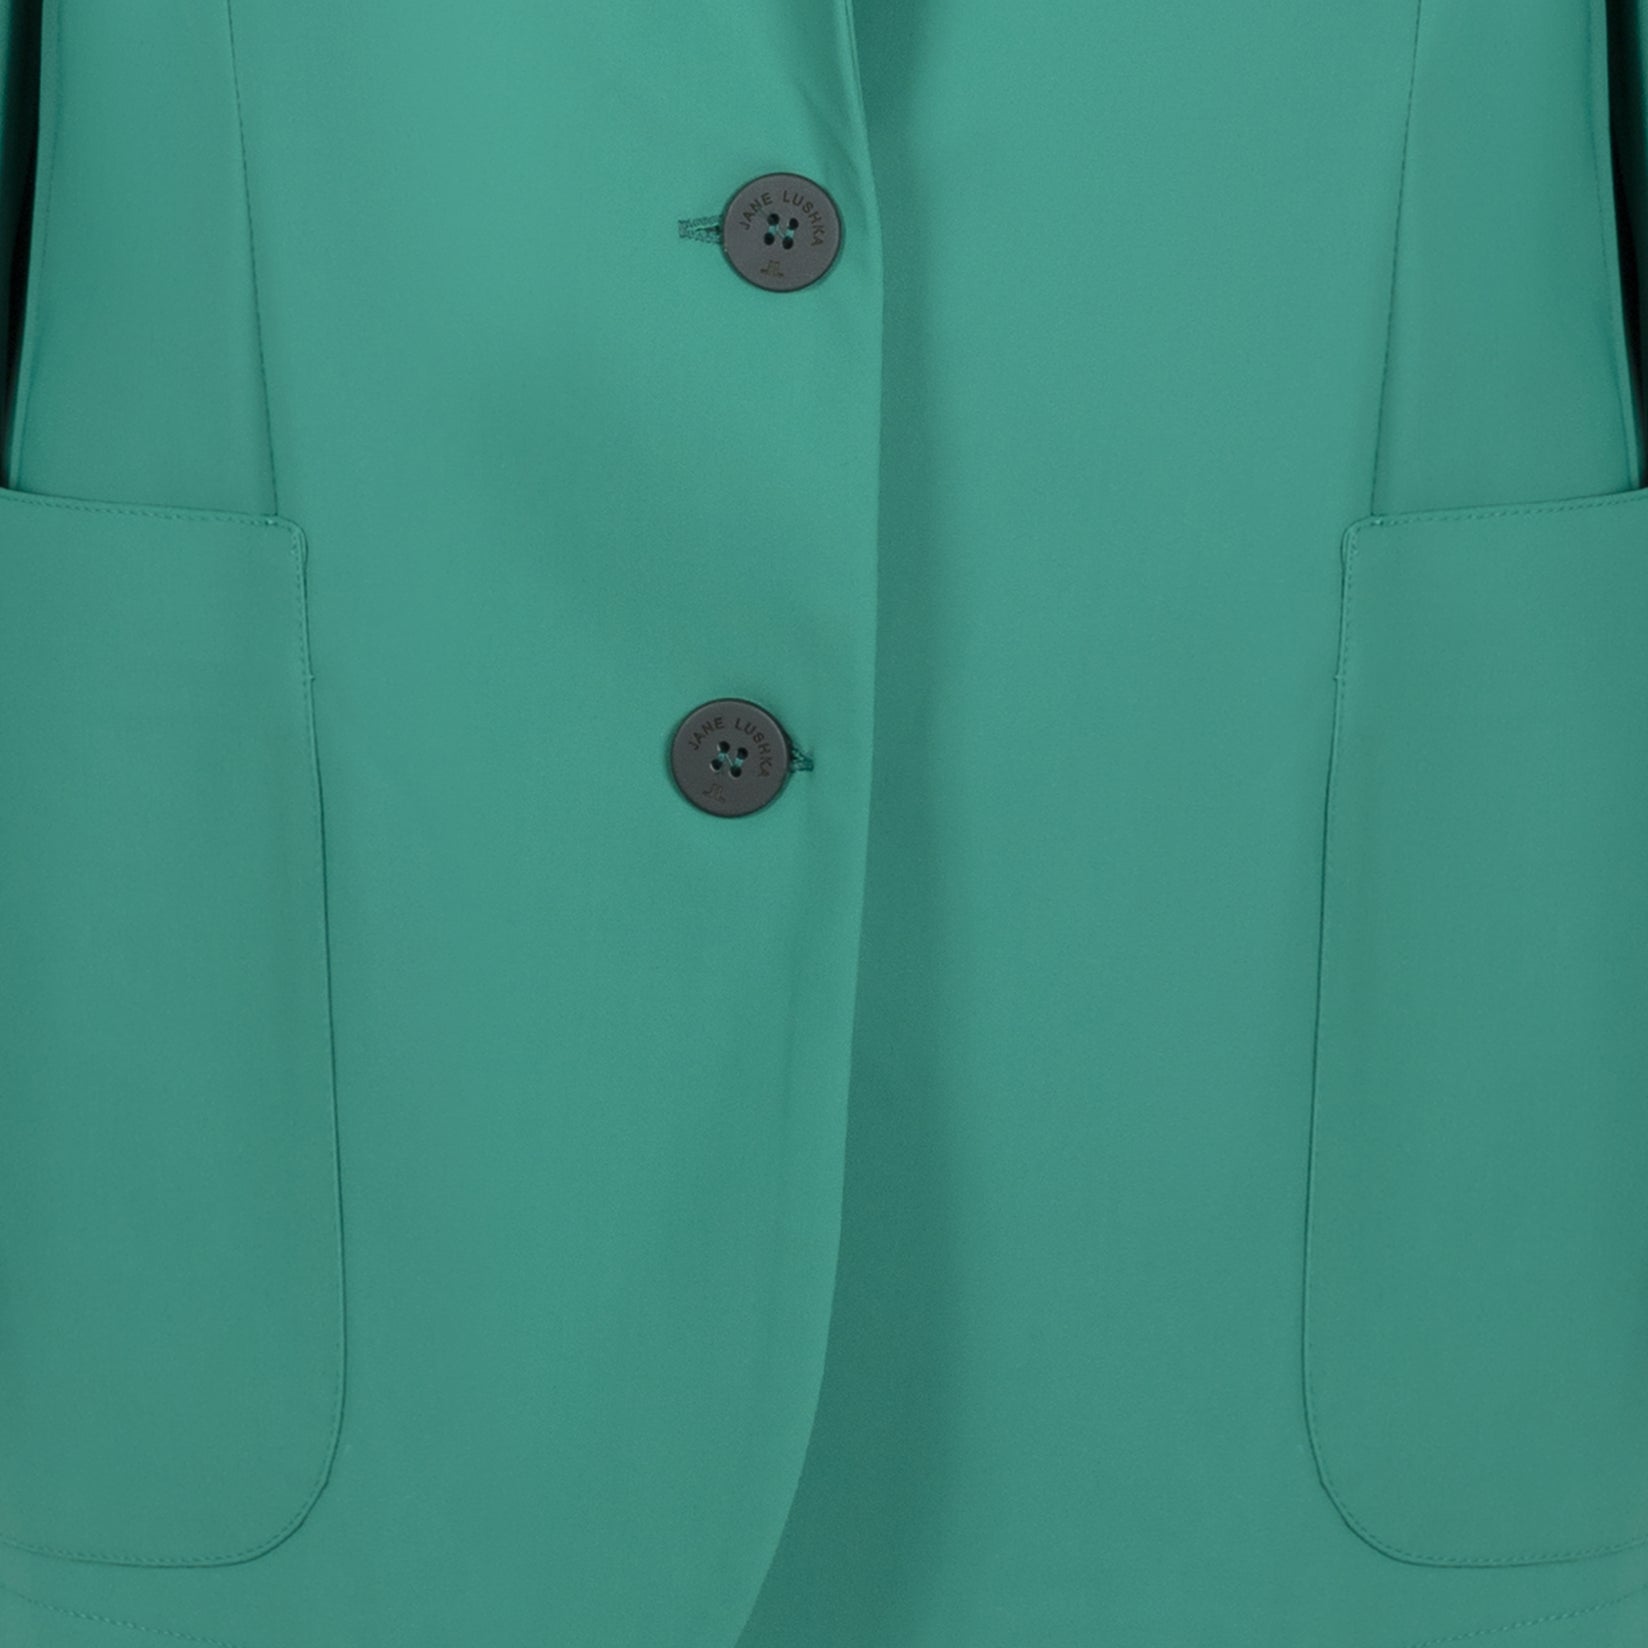 Lennard Oversize Blazer Technical Jersey | Green